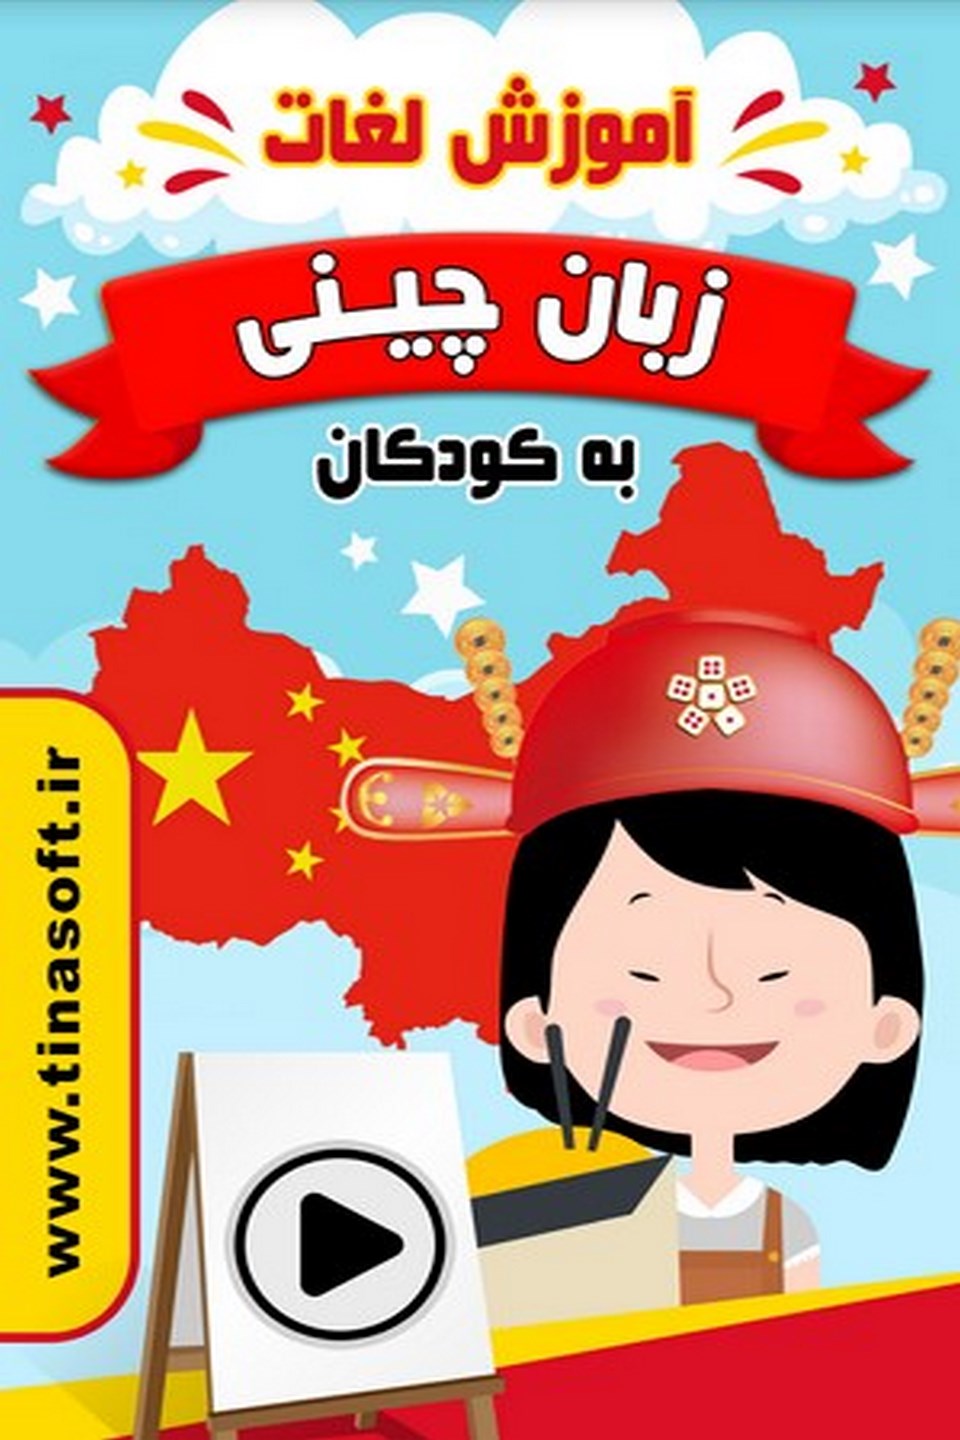 آموزش لغات زبان چینی به کودکان